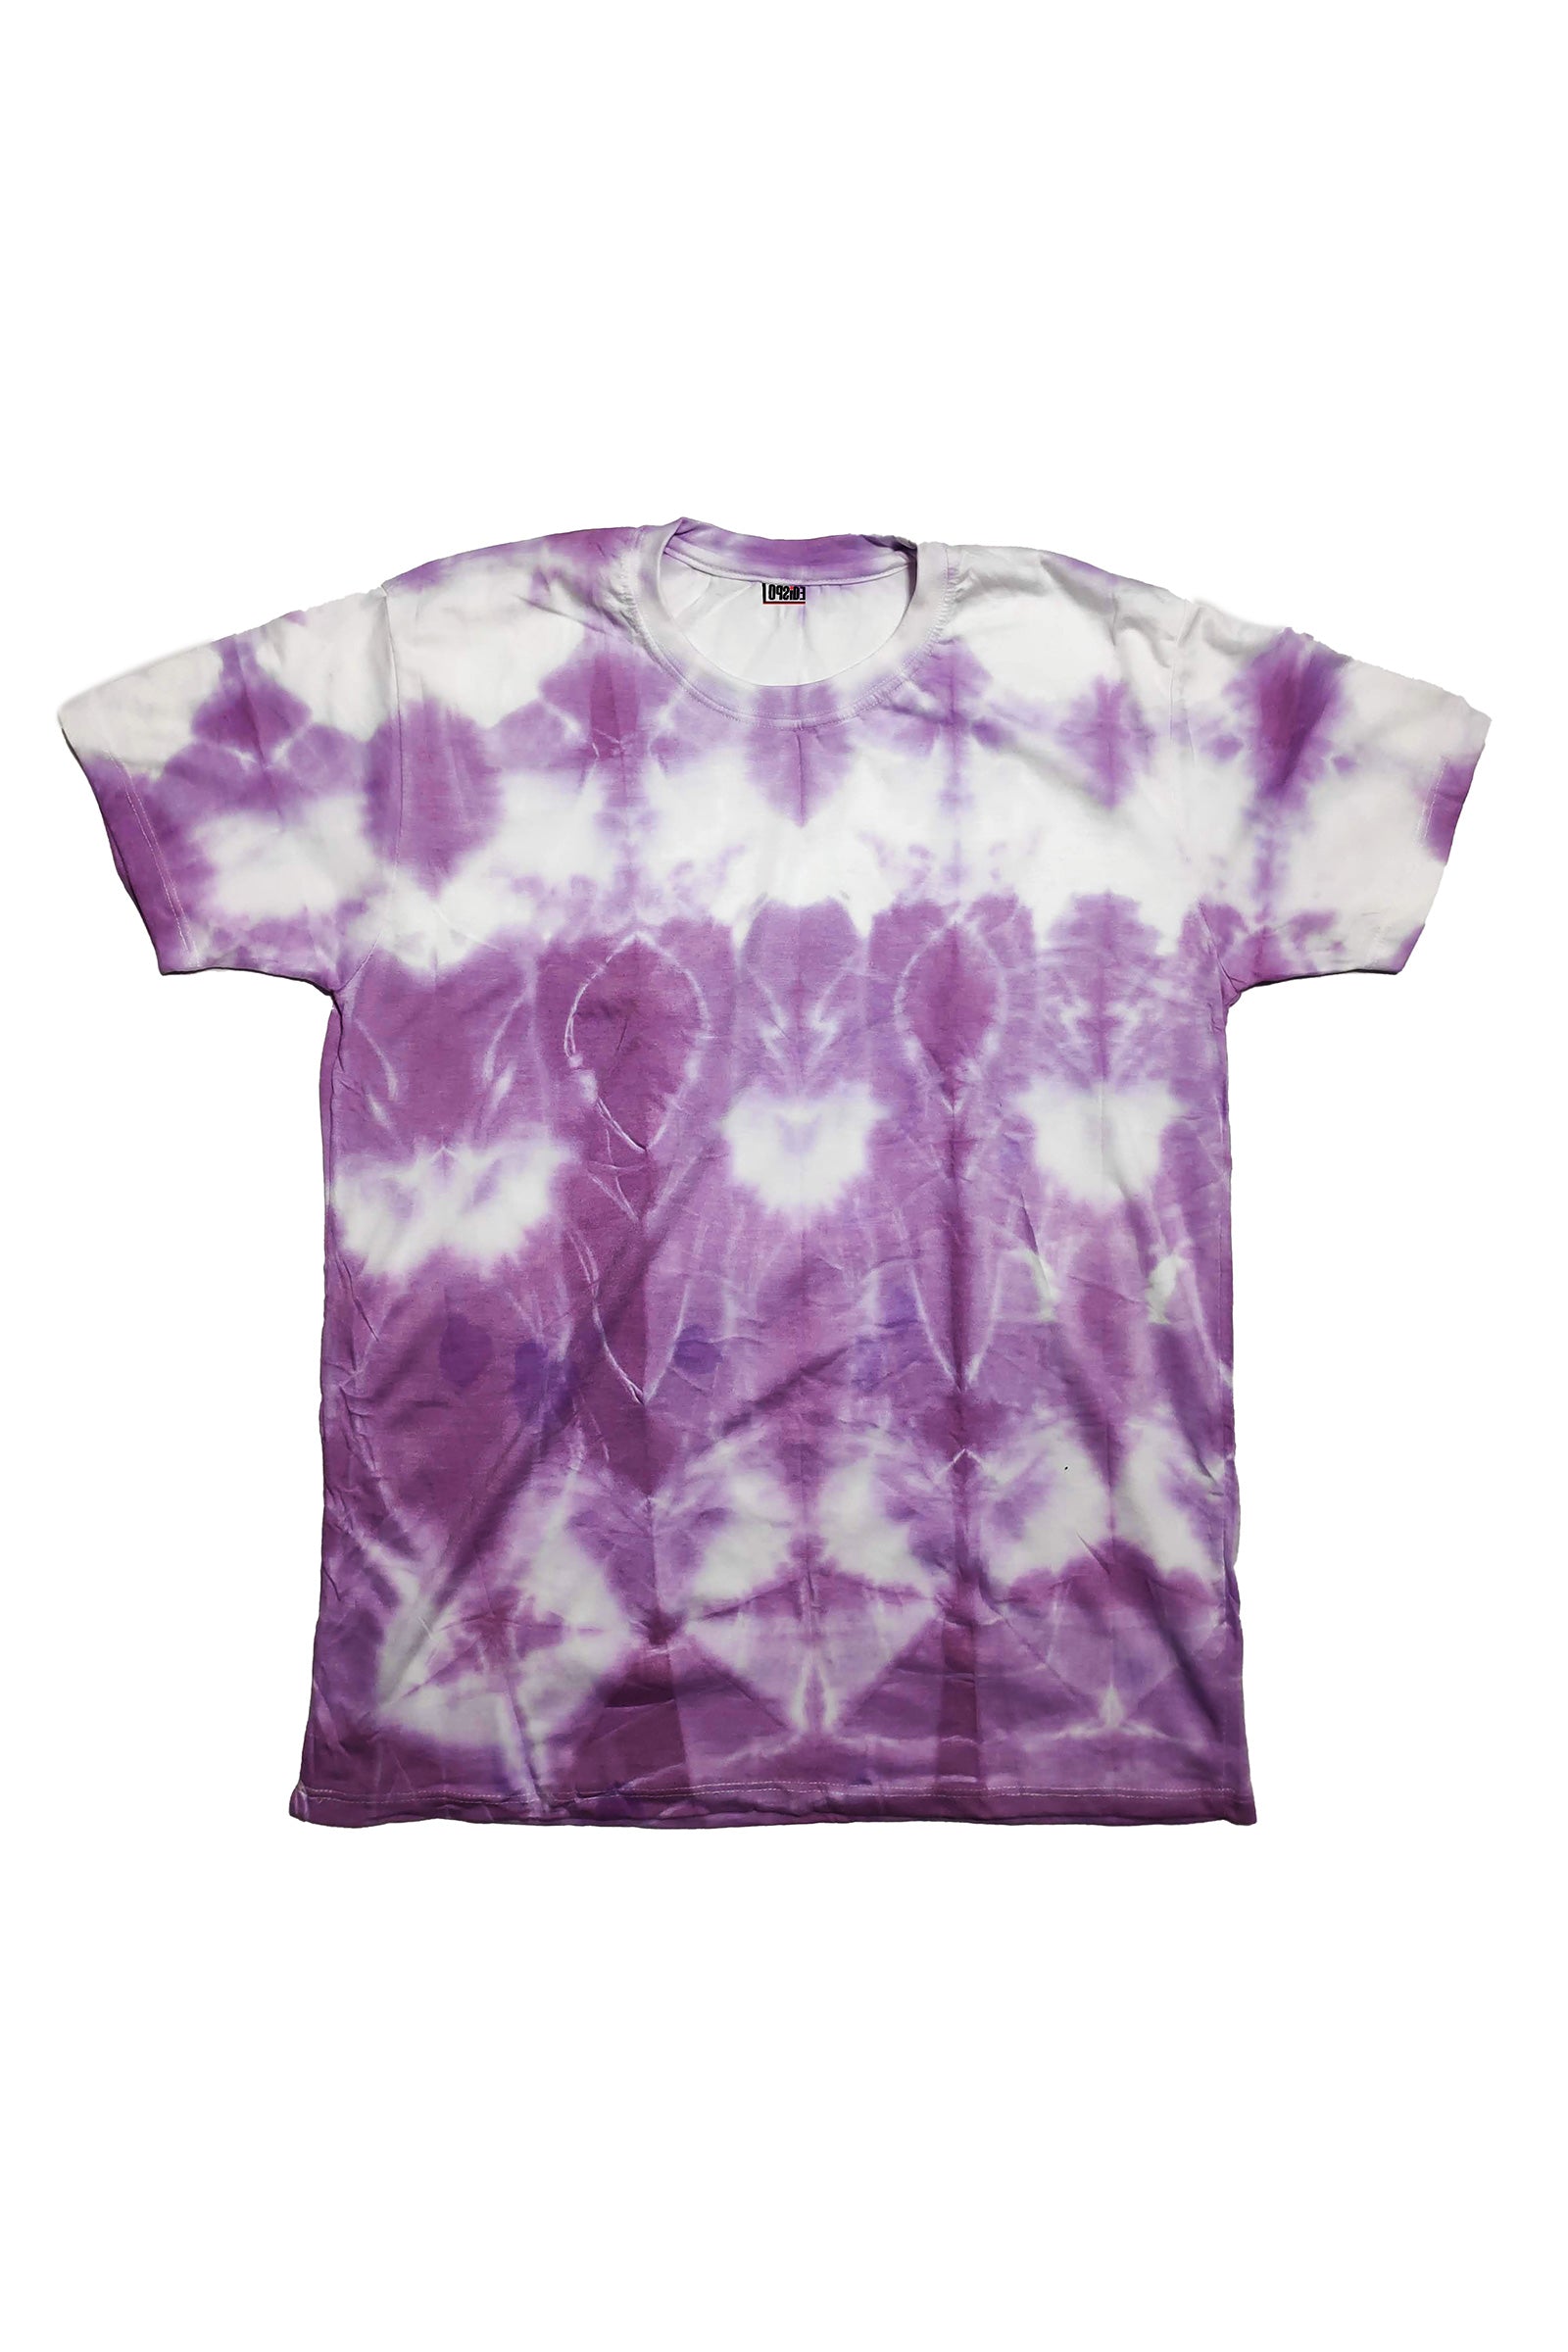 Regular Fit Lavender Color Tie-dye-Patterned Half Sleeve T-shirt (Unisex)